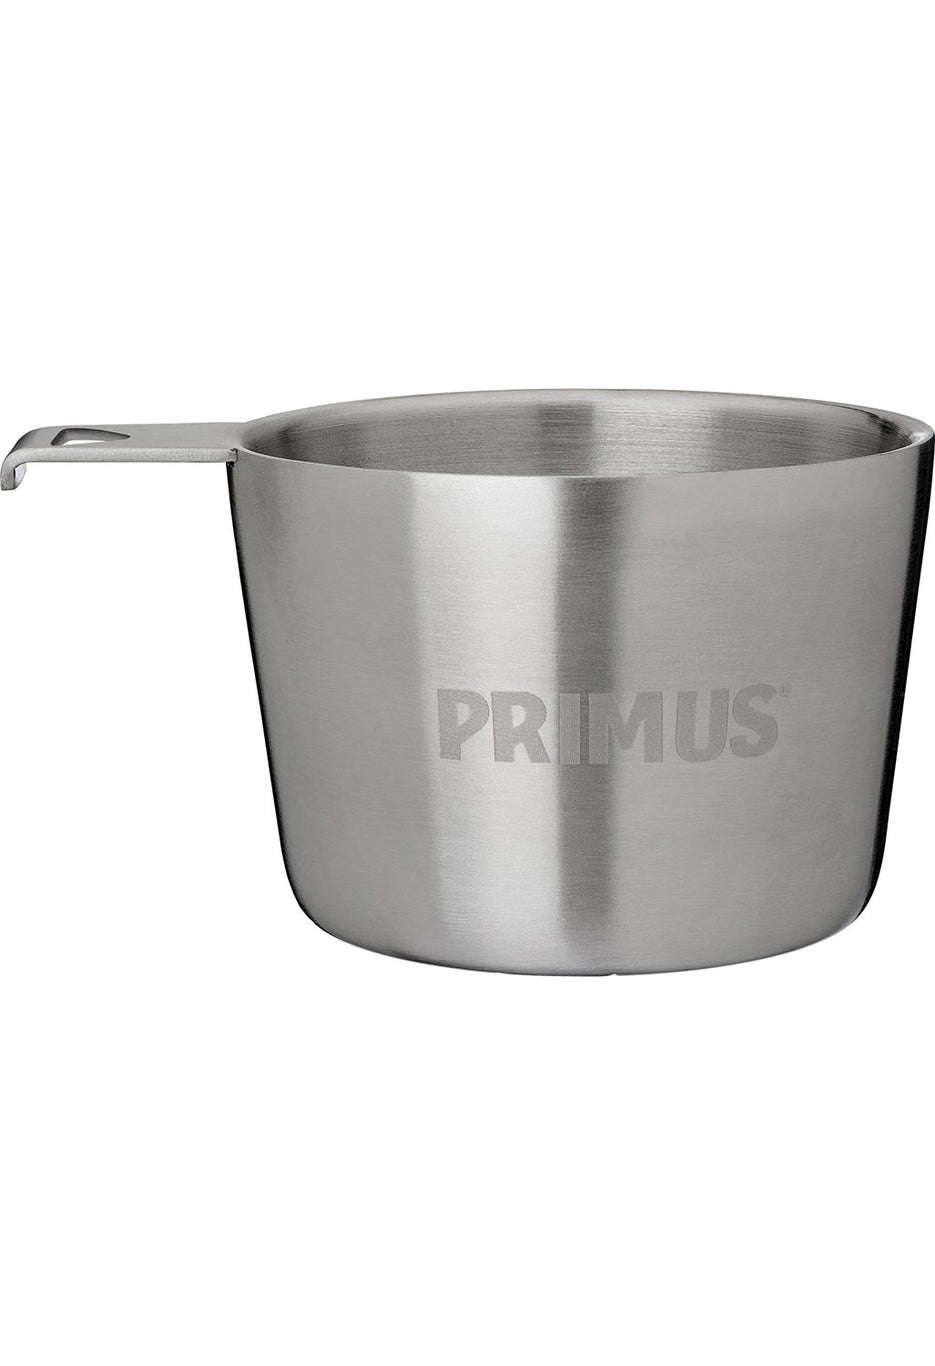 Primus Kasa Stainless Steel Mug 0